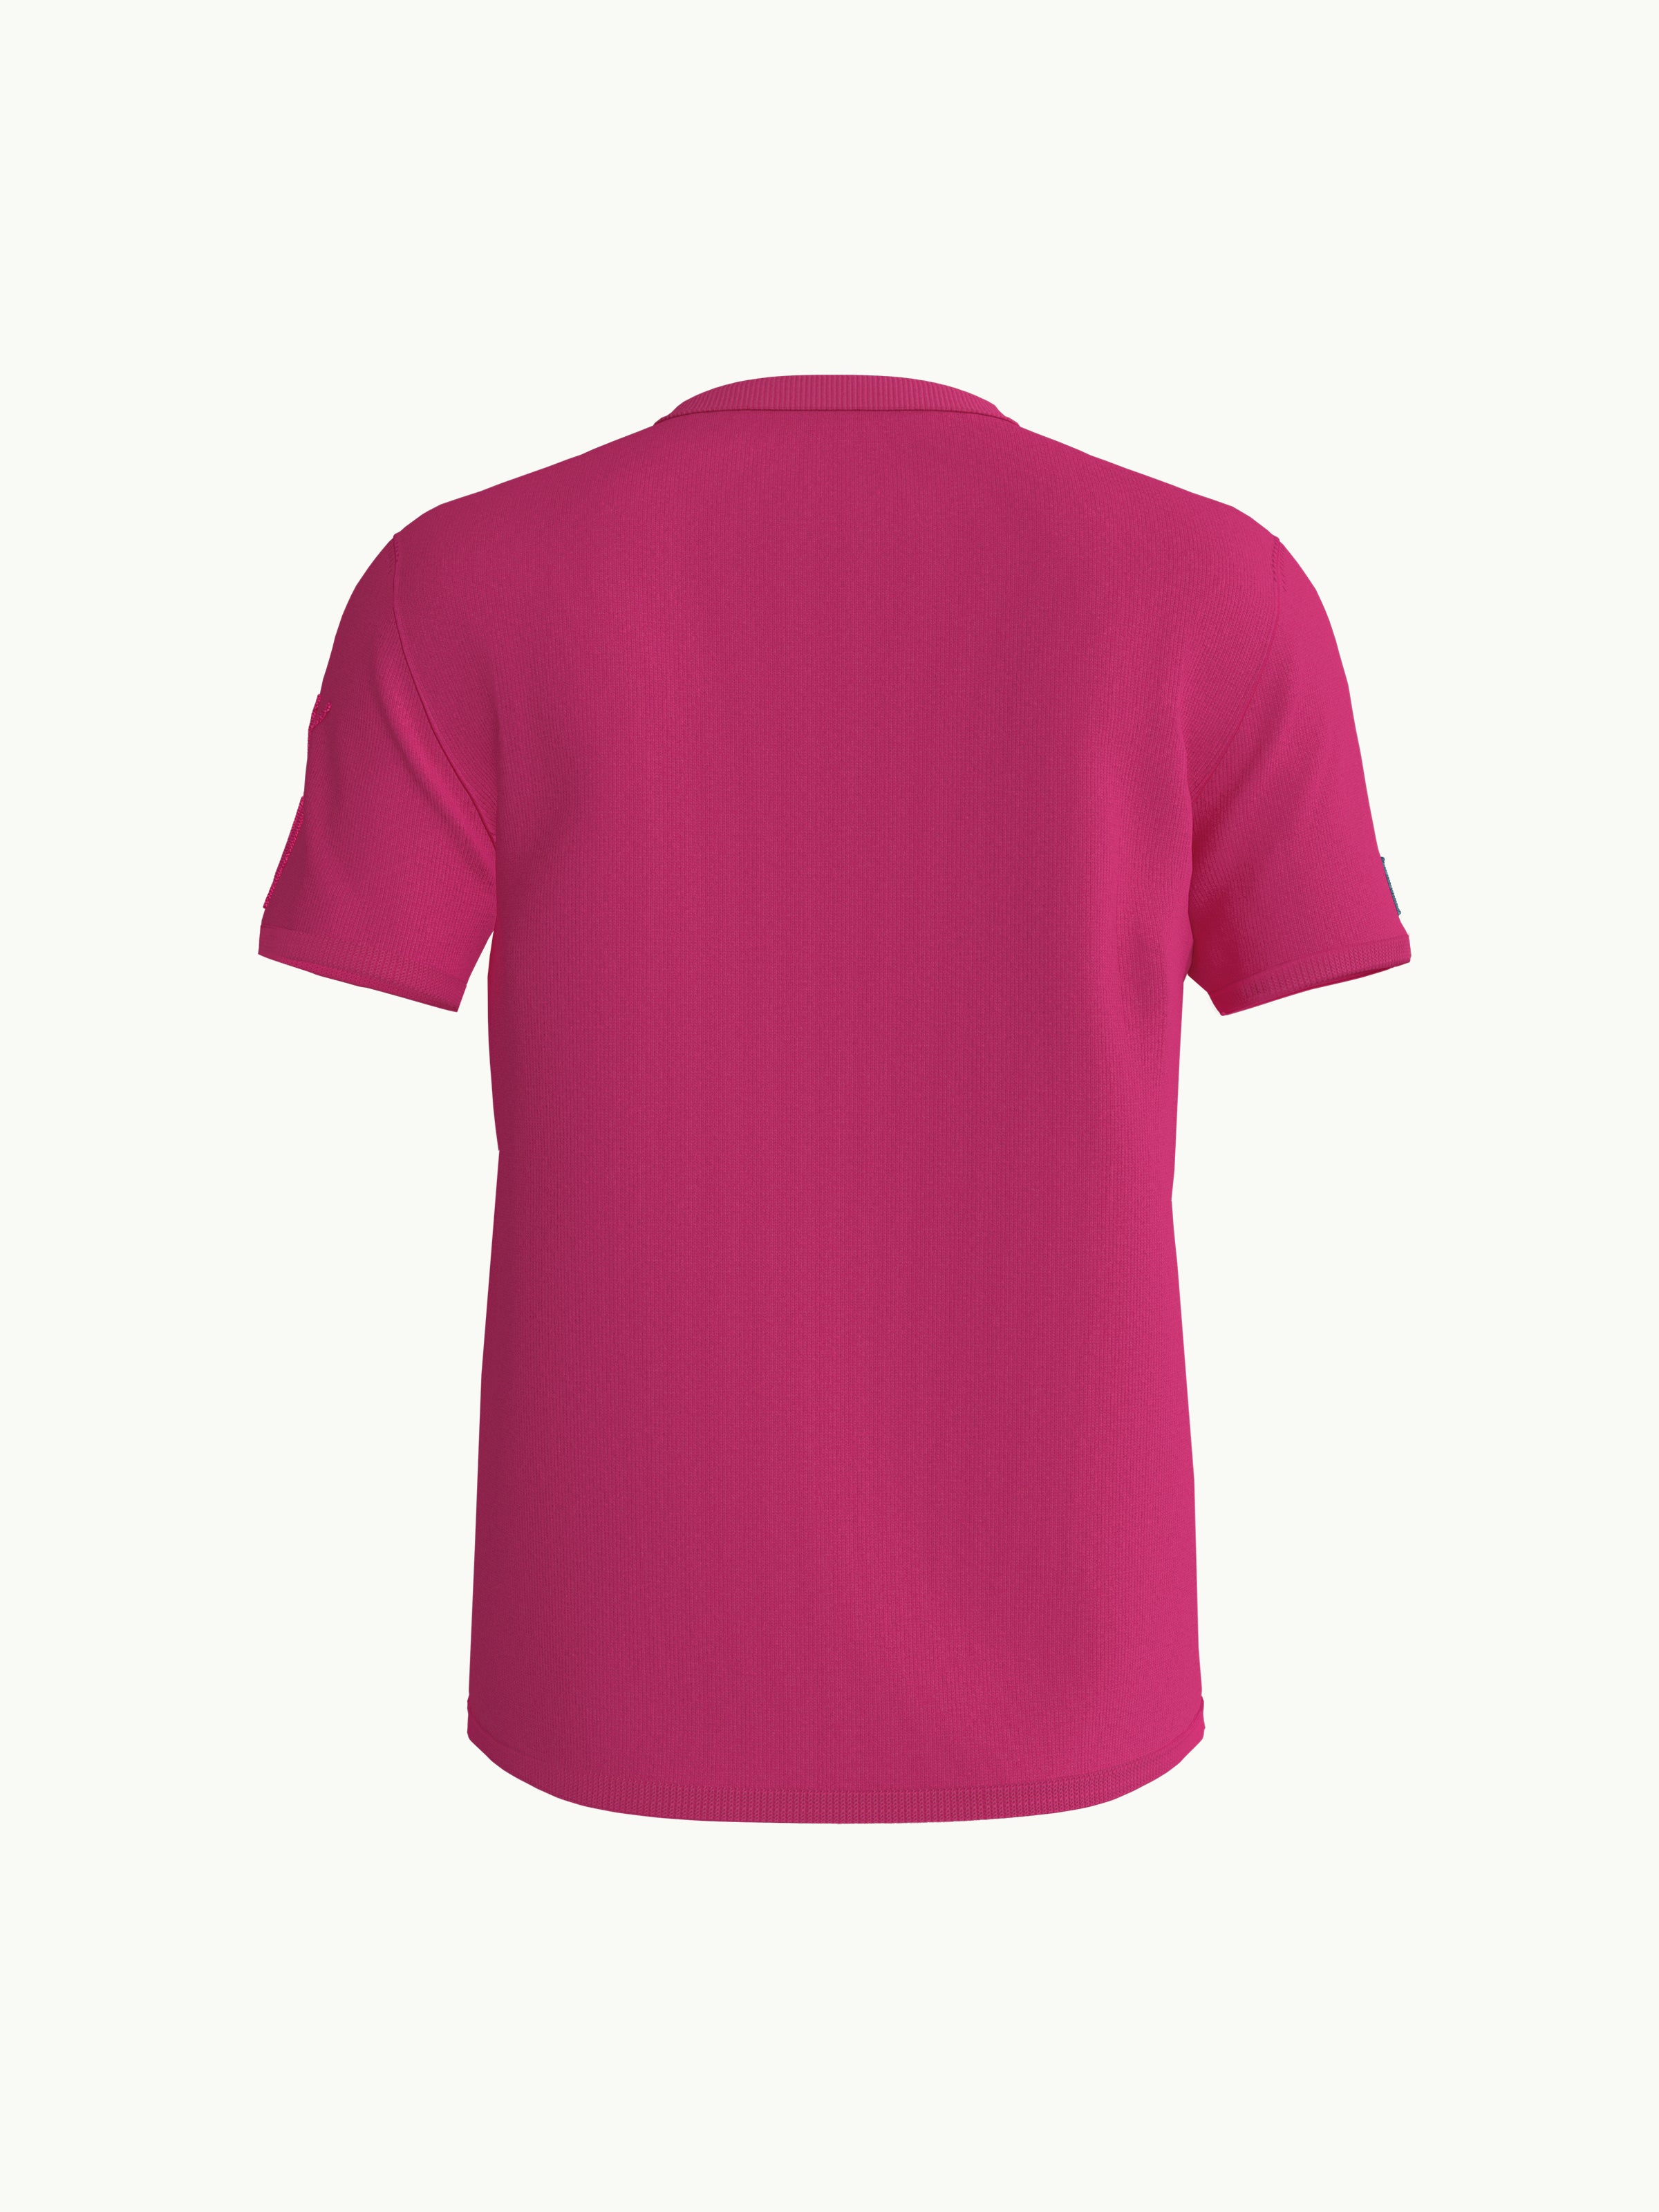 Men's T-Shirt - Butterfly Pink